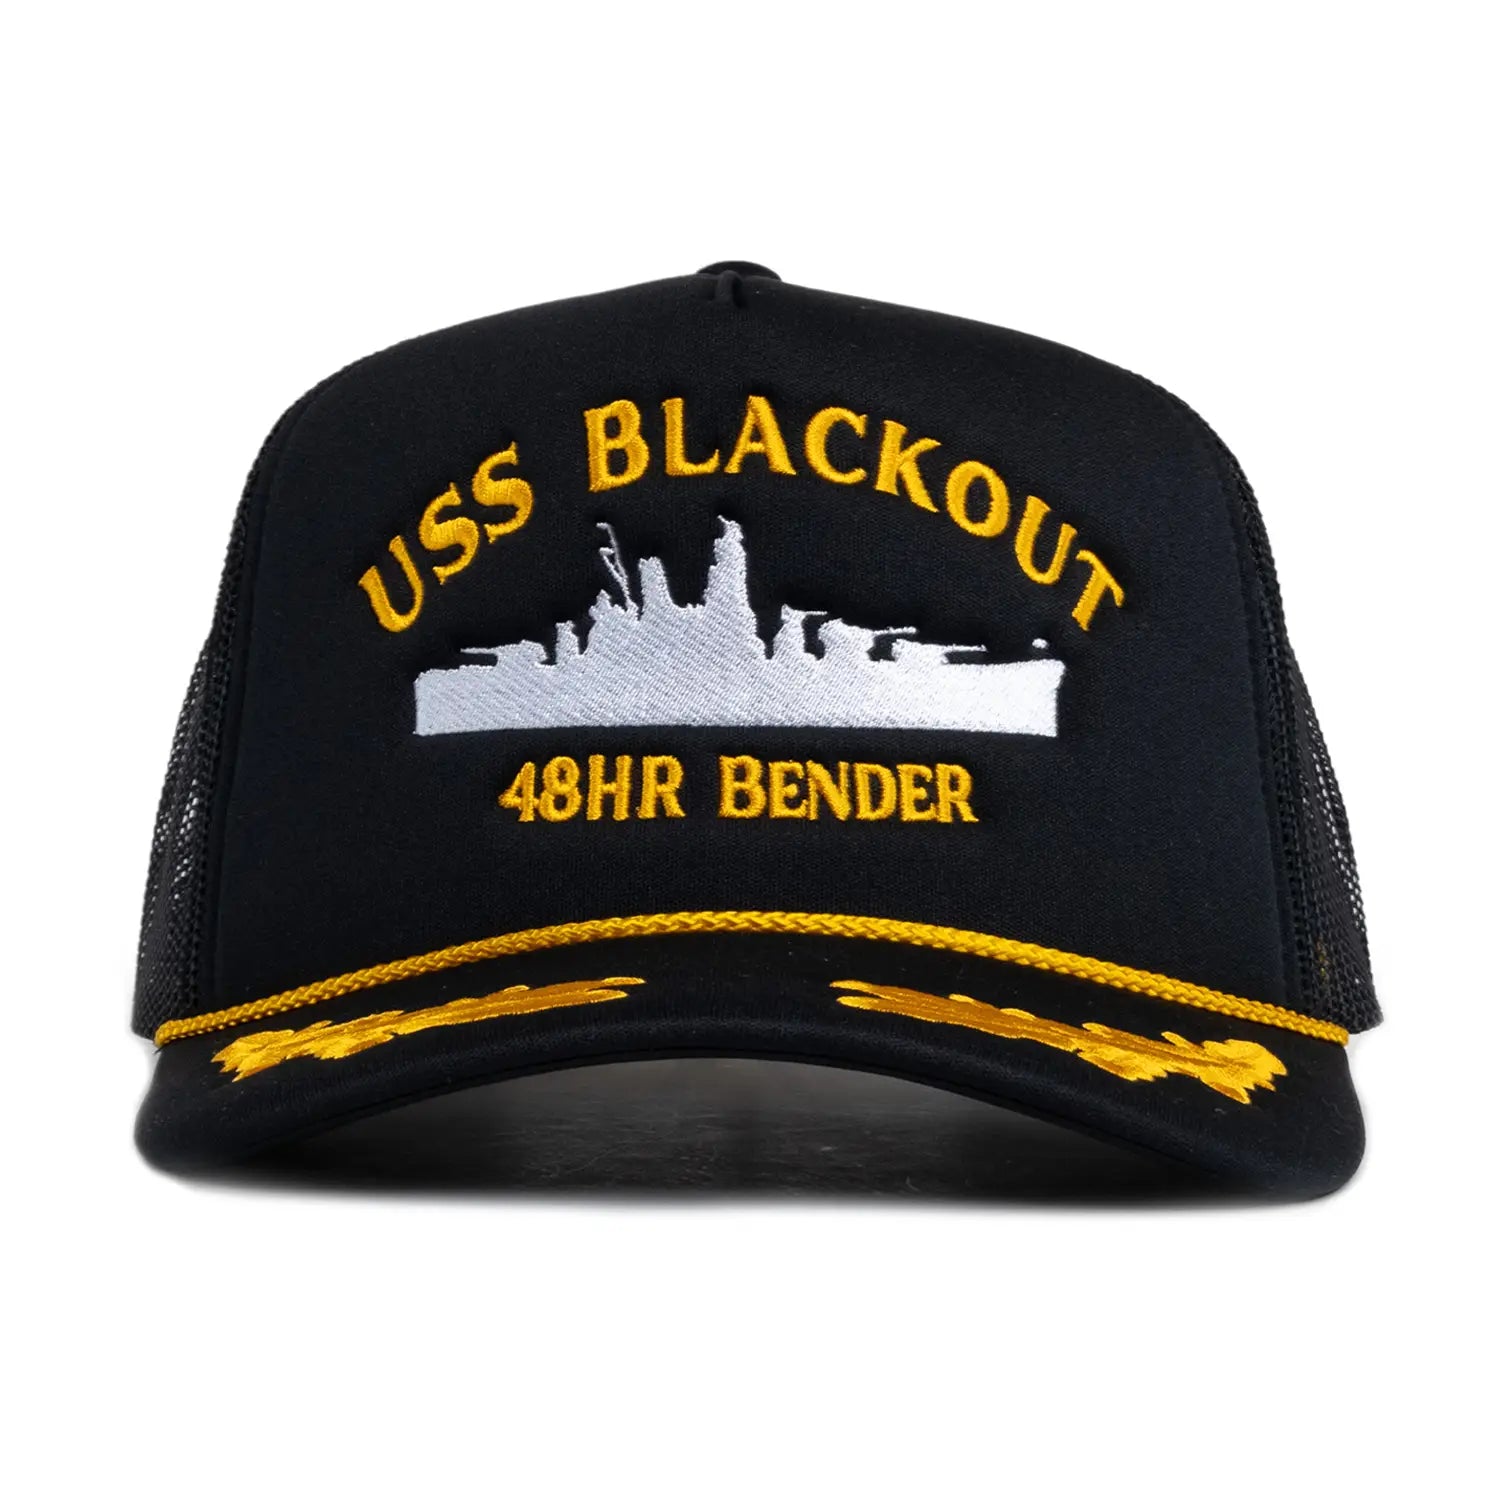 USS Blackout Trucker Hat